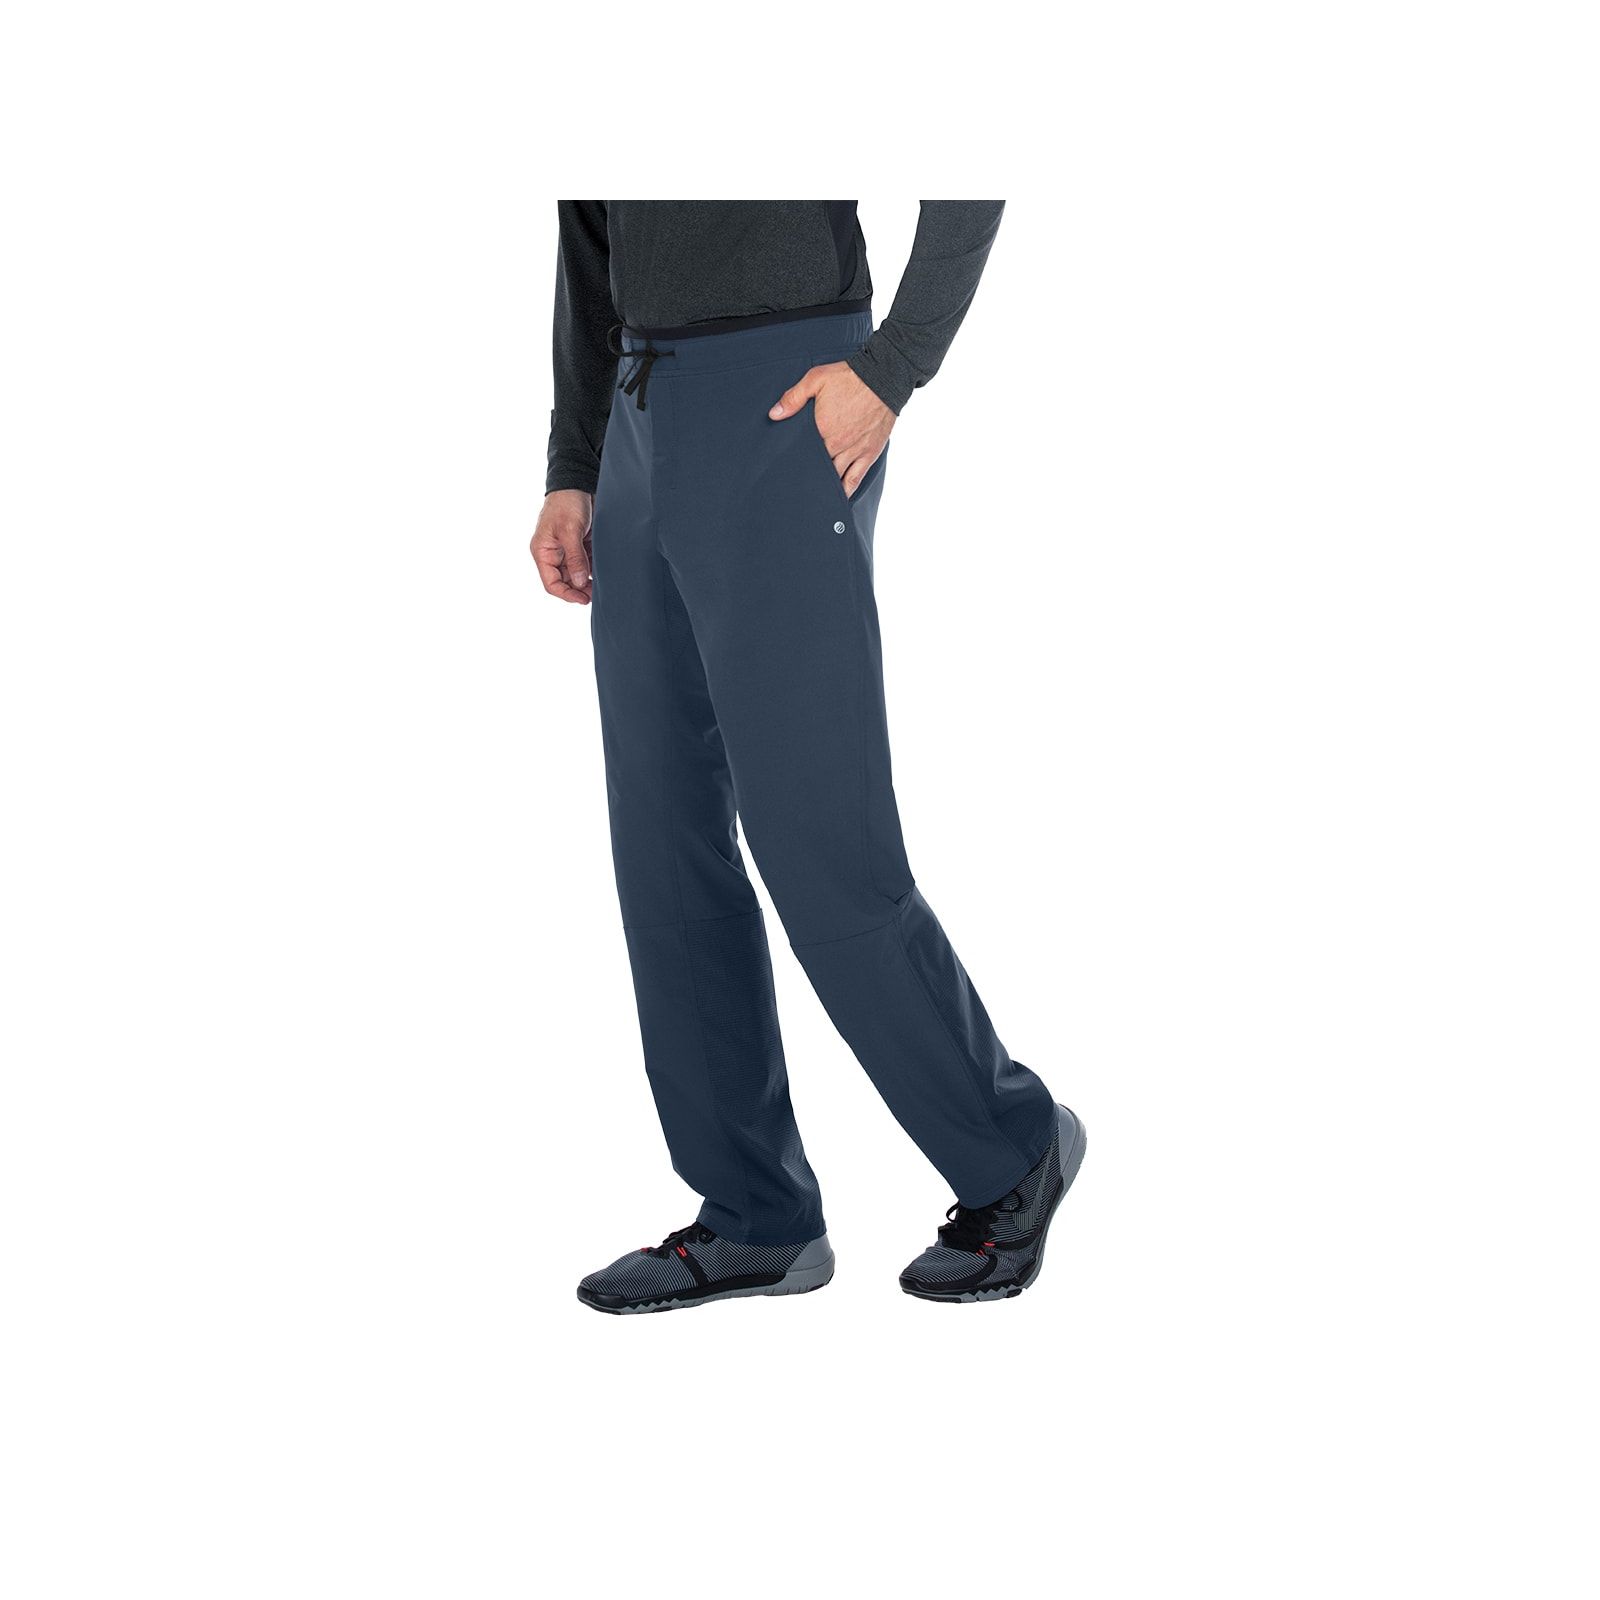 Pantalon médical homme, couleur gris anthracite vue de côté, collection "Barco One Wellness" (BWP508-)